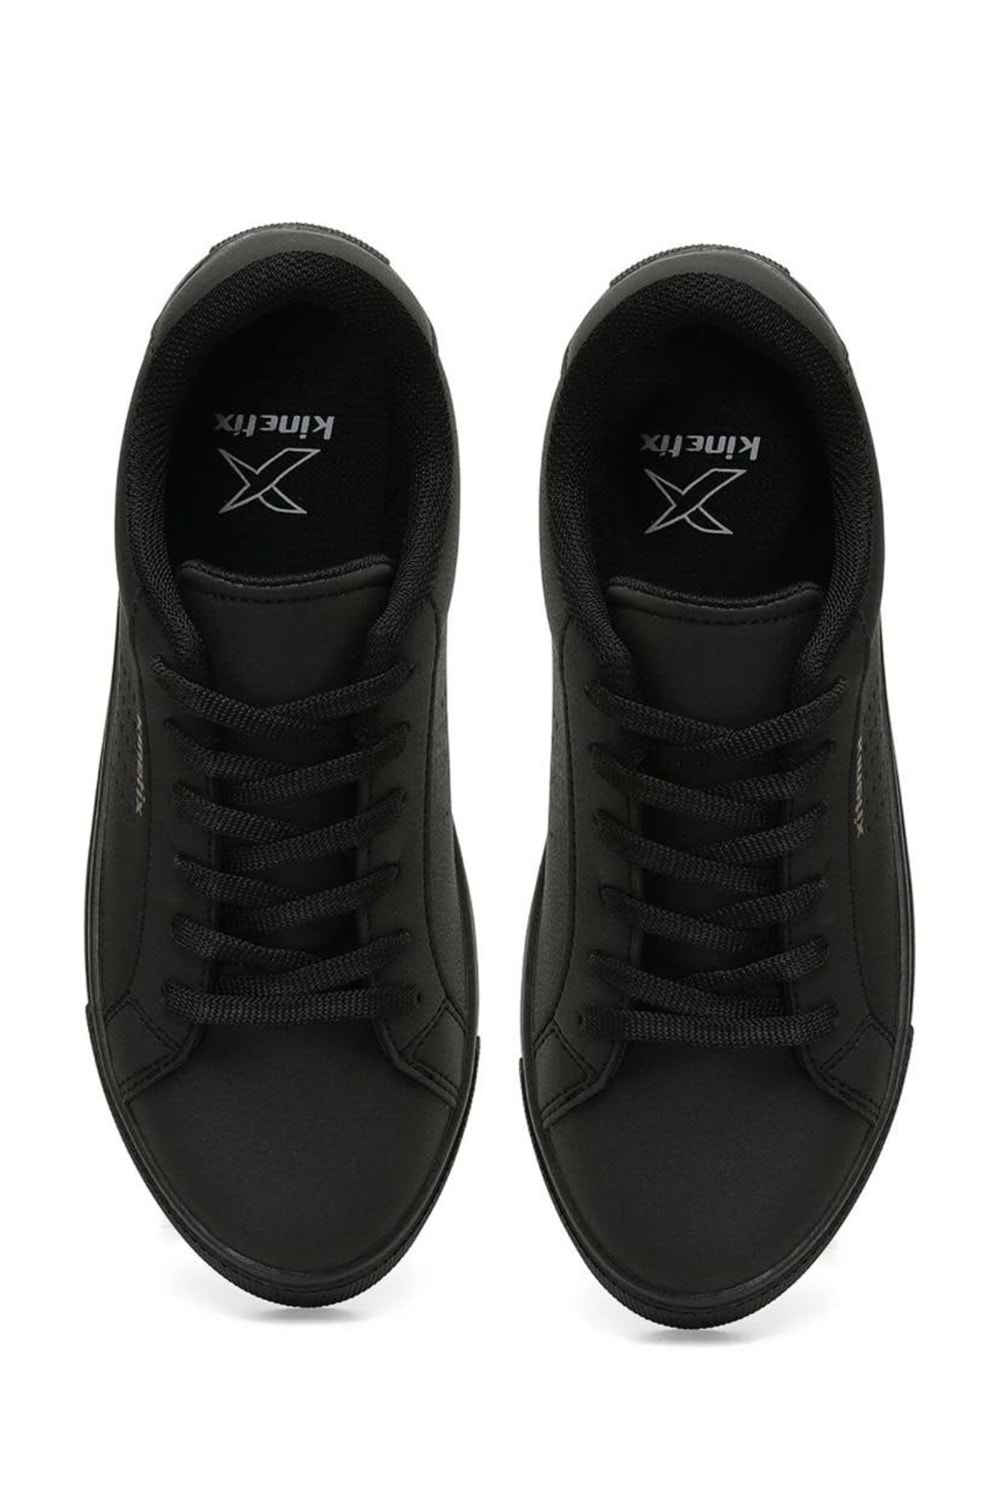 KİNETİX PORO 4FX Siyah Kadın Günlük Spor Ayakkabı BA04517 - Siyah - 37